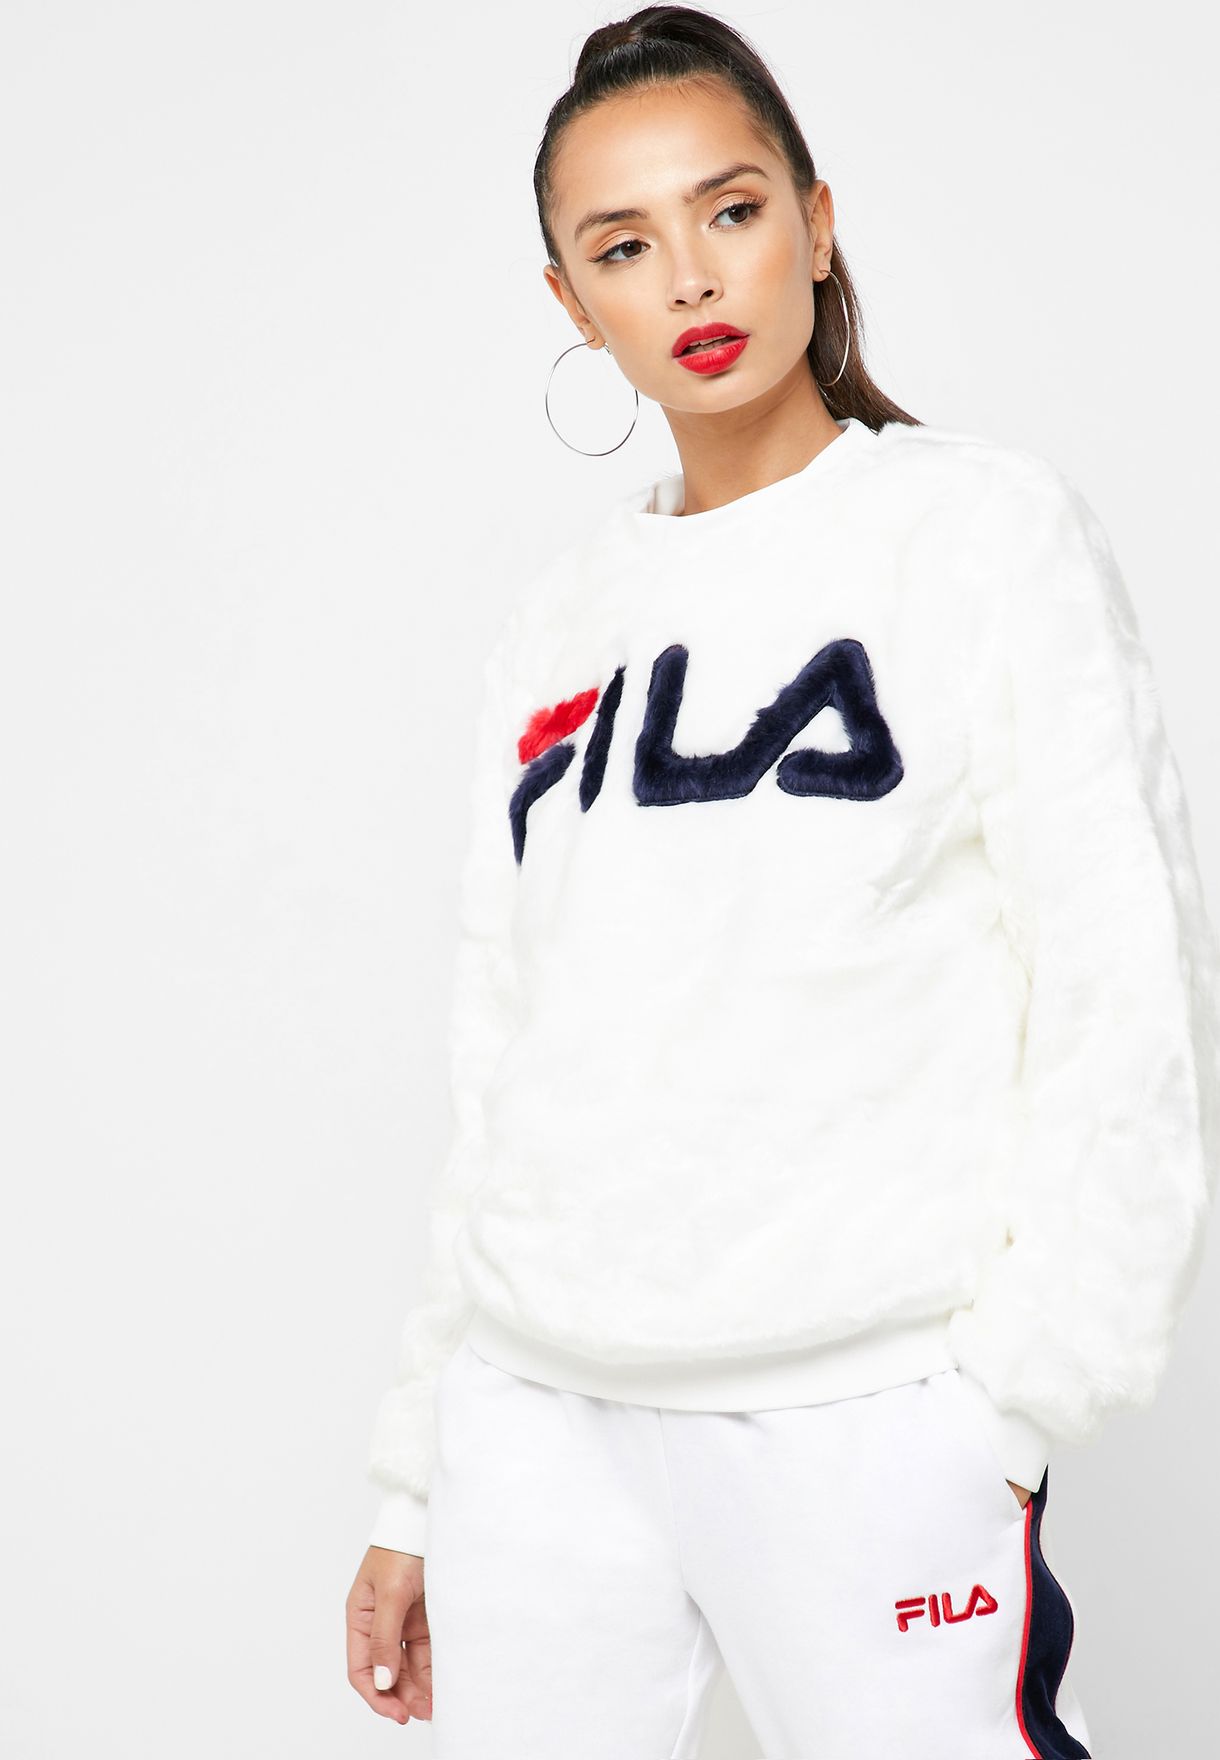 fila women sweater